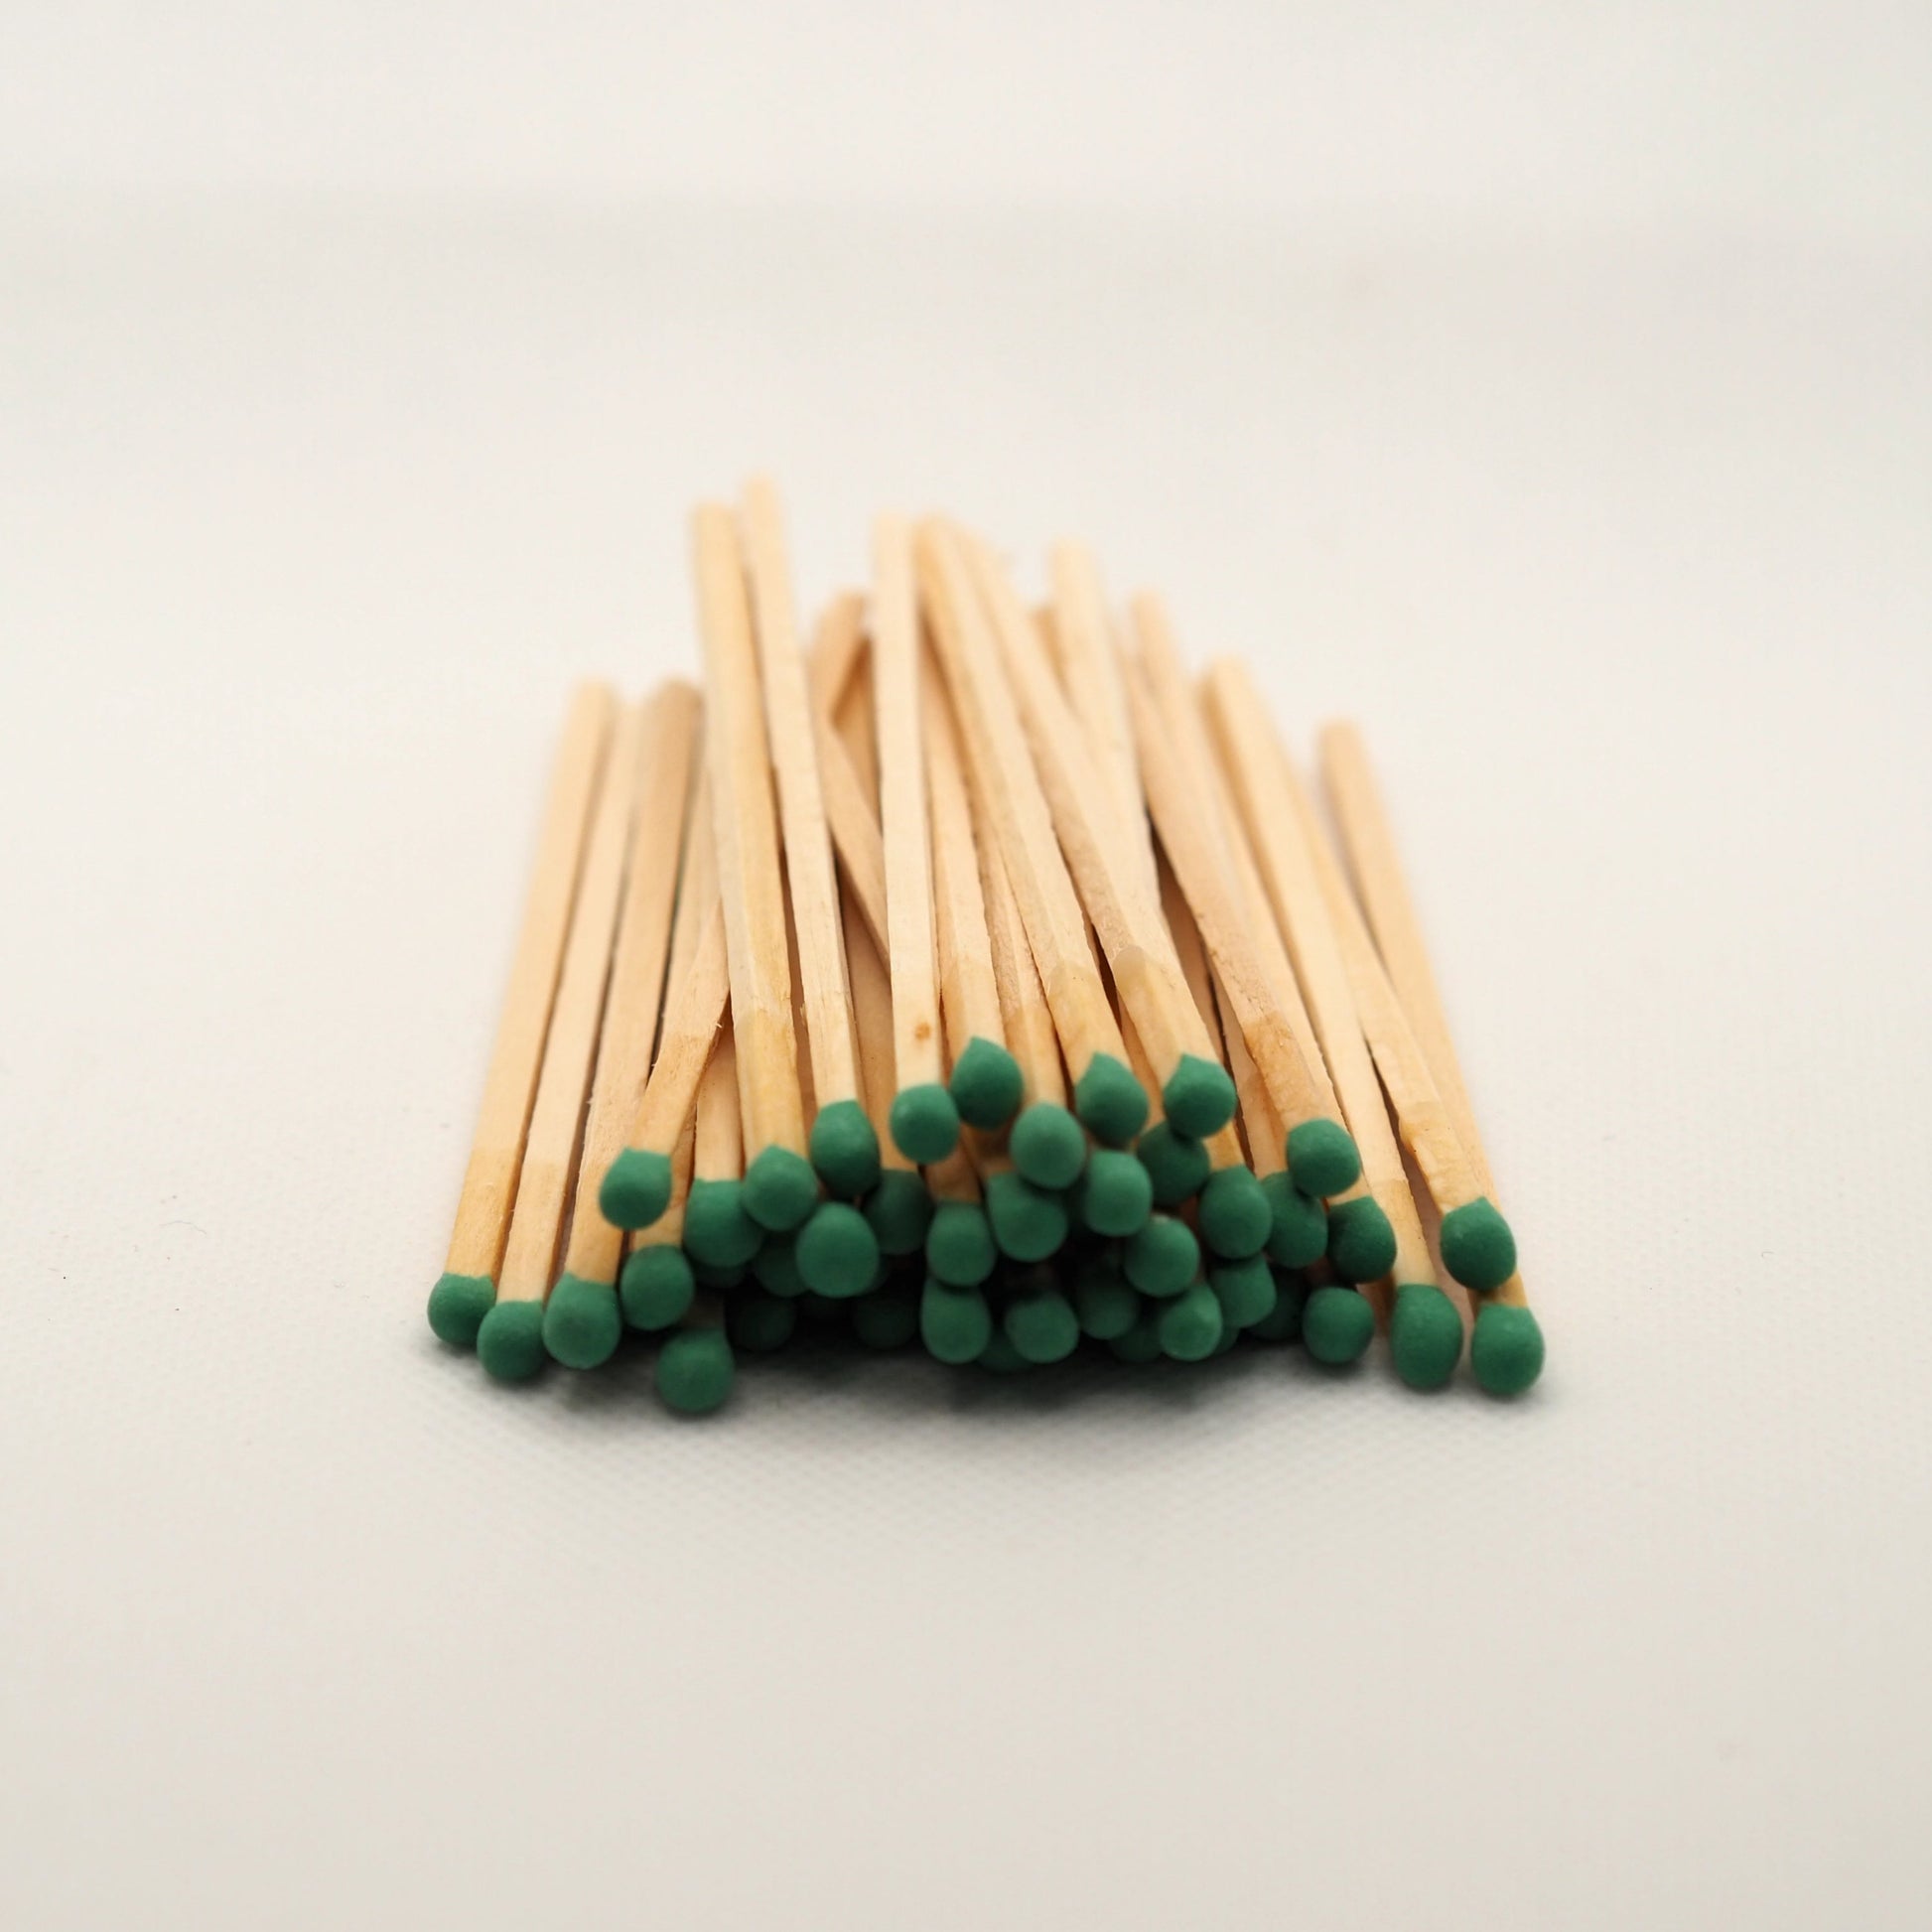 Green tip matches